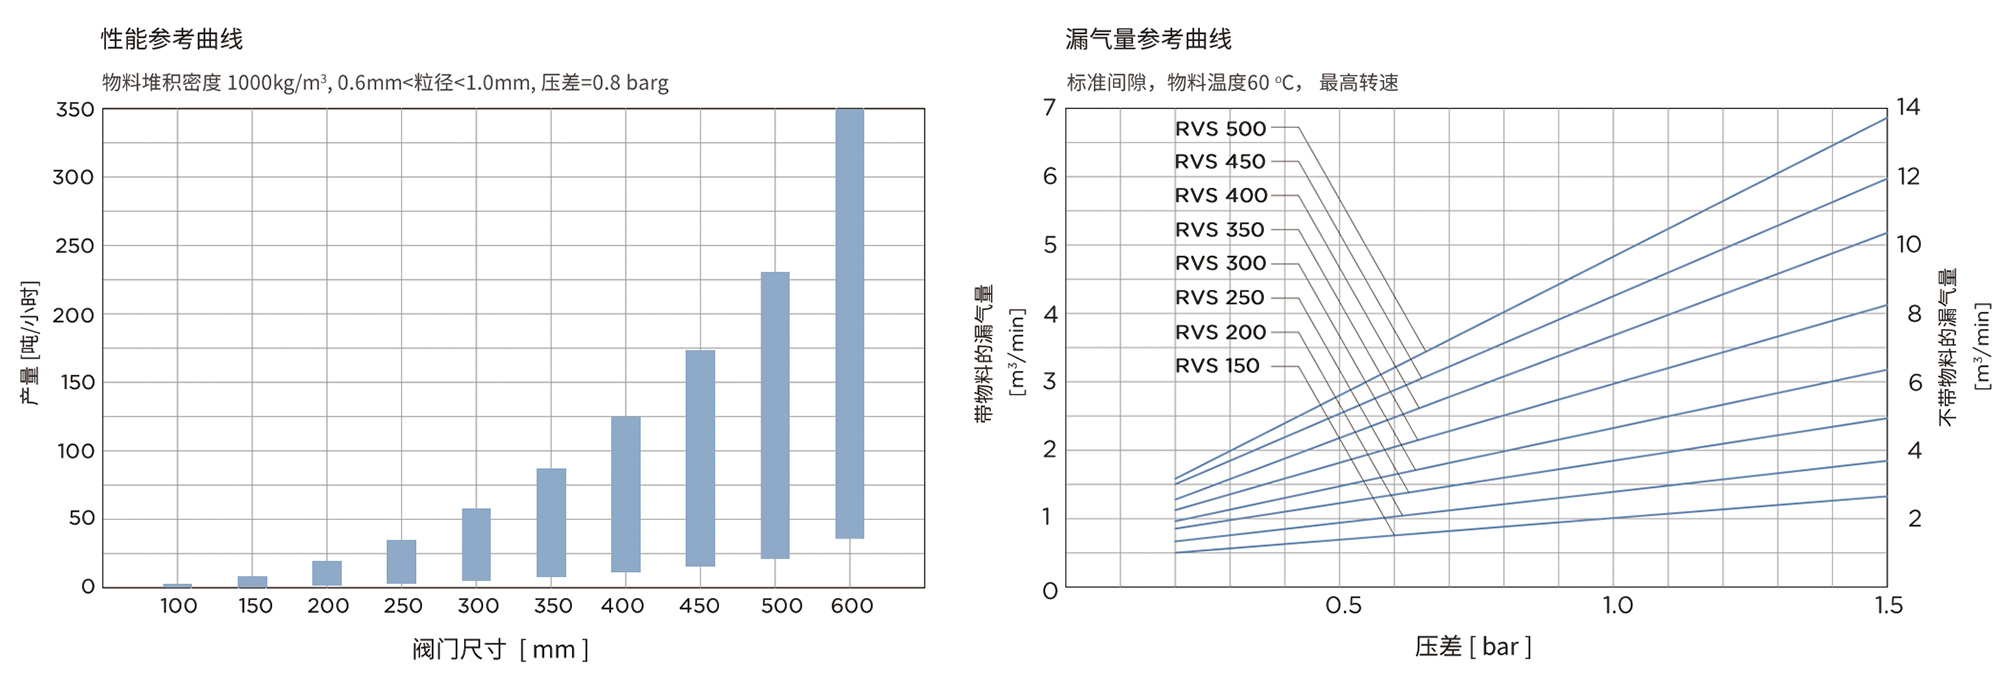 RVS结构图中文.jpg